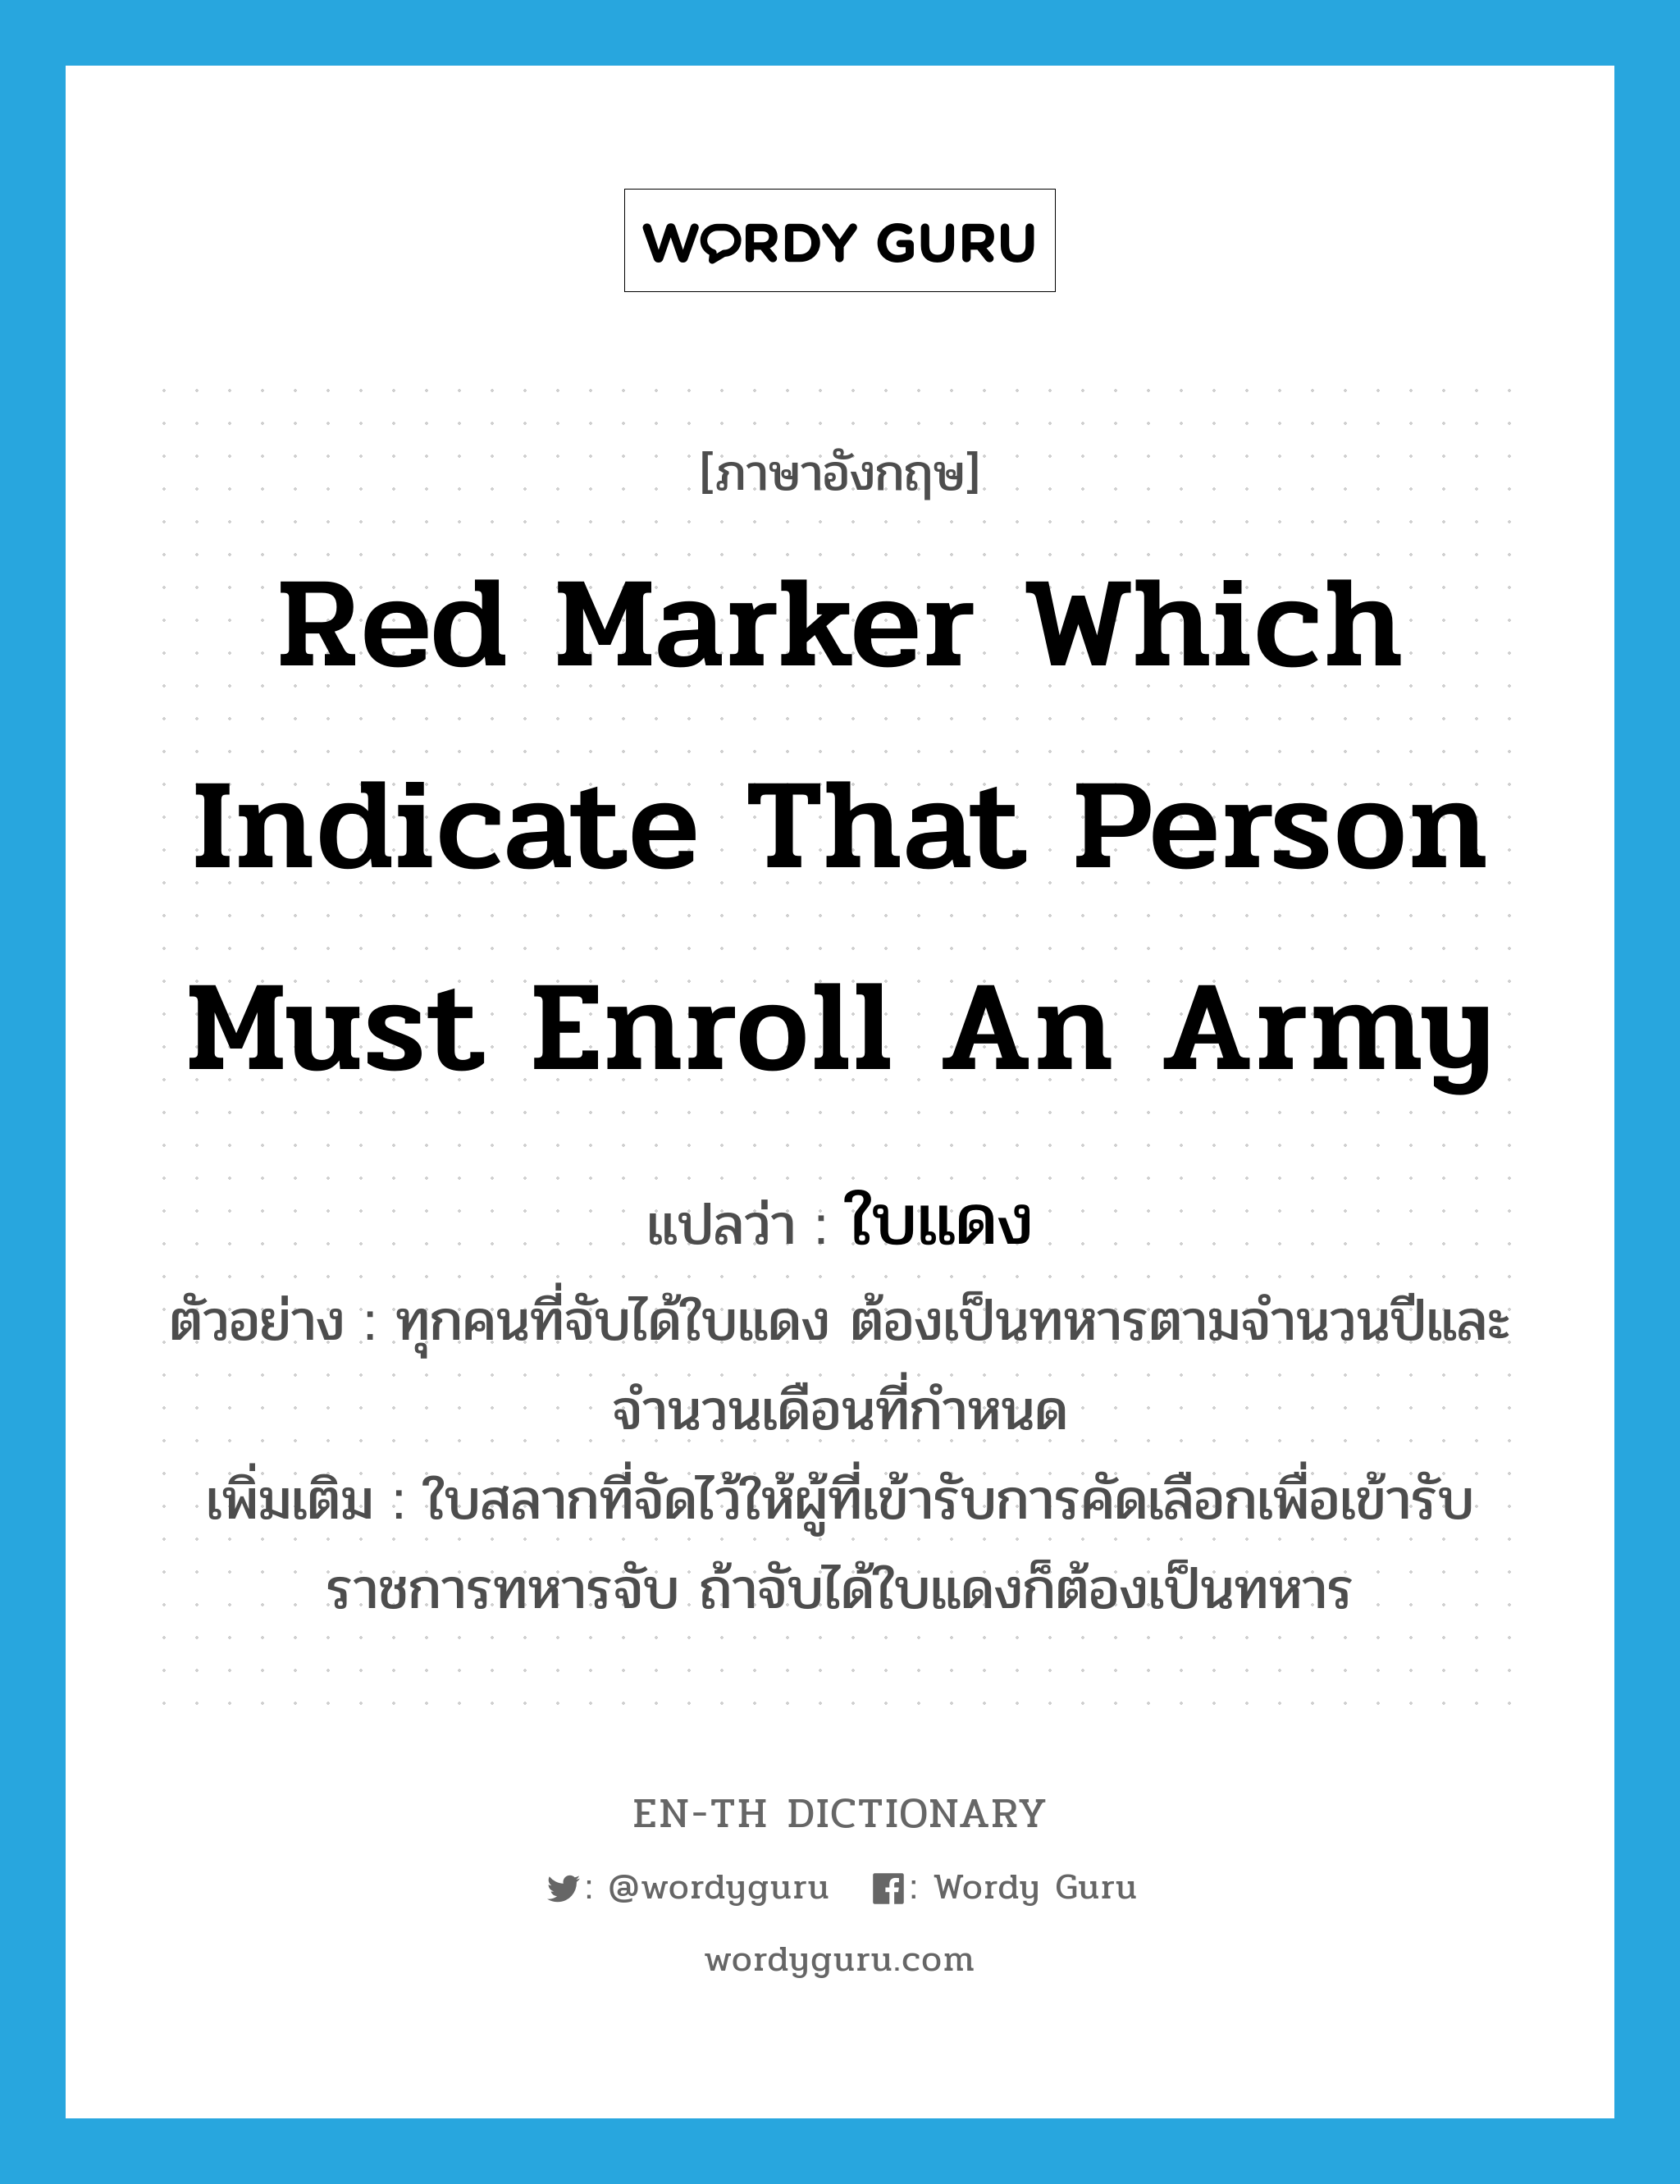 red marker which indicate that person must enroll an army แปลว่า?, คำศัพท์ภาษาอังกฤษ red marker which indicate that person must enroll an army แปลว่า ใบแดง ประเภท N ตัวอย่าง ทุกคนที่จับได้ใบแดง ต้องเป็นทหารตามจำนวนปีและจำนวนเดือนที่กำหนด เพิ่มเติม ใบสลากที่จัดไว้ให้ผู้ที่เข้ารับการคัดเลือกเพื่อเข้ารับราชการทหารจับ ถ้าจับได้ใบแดงก็ต้องเป็นทหาร หมวด N